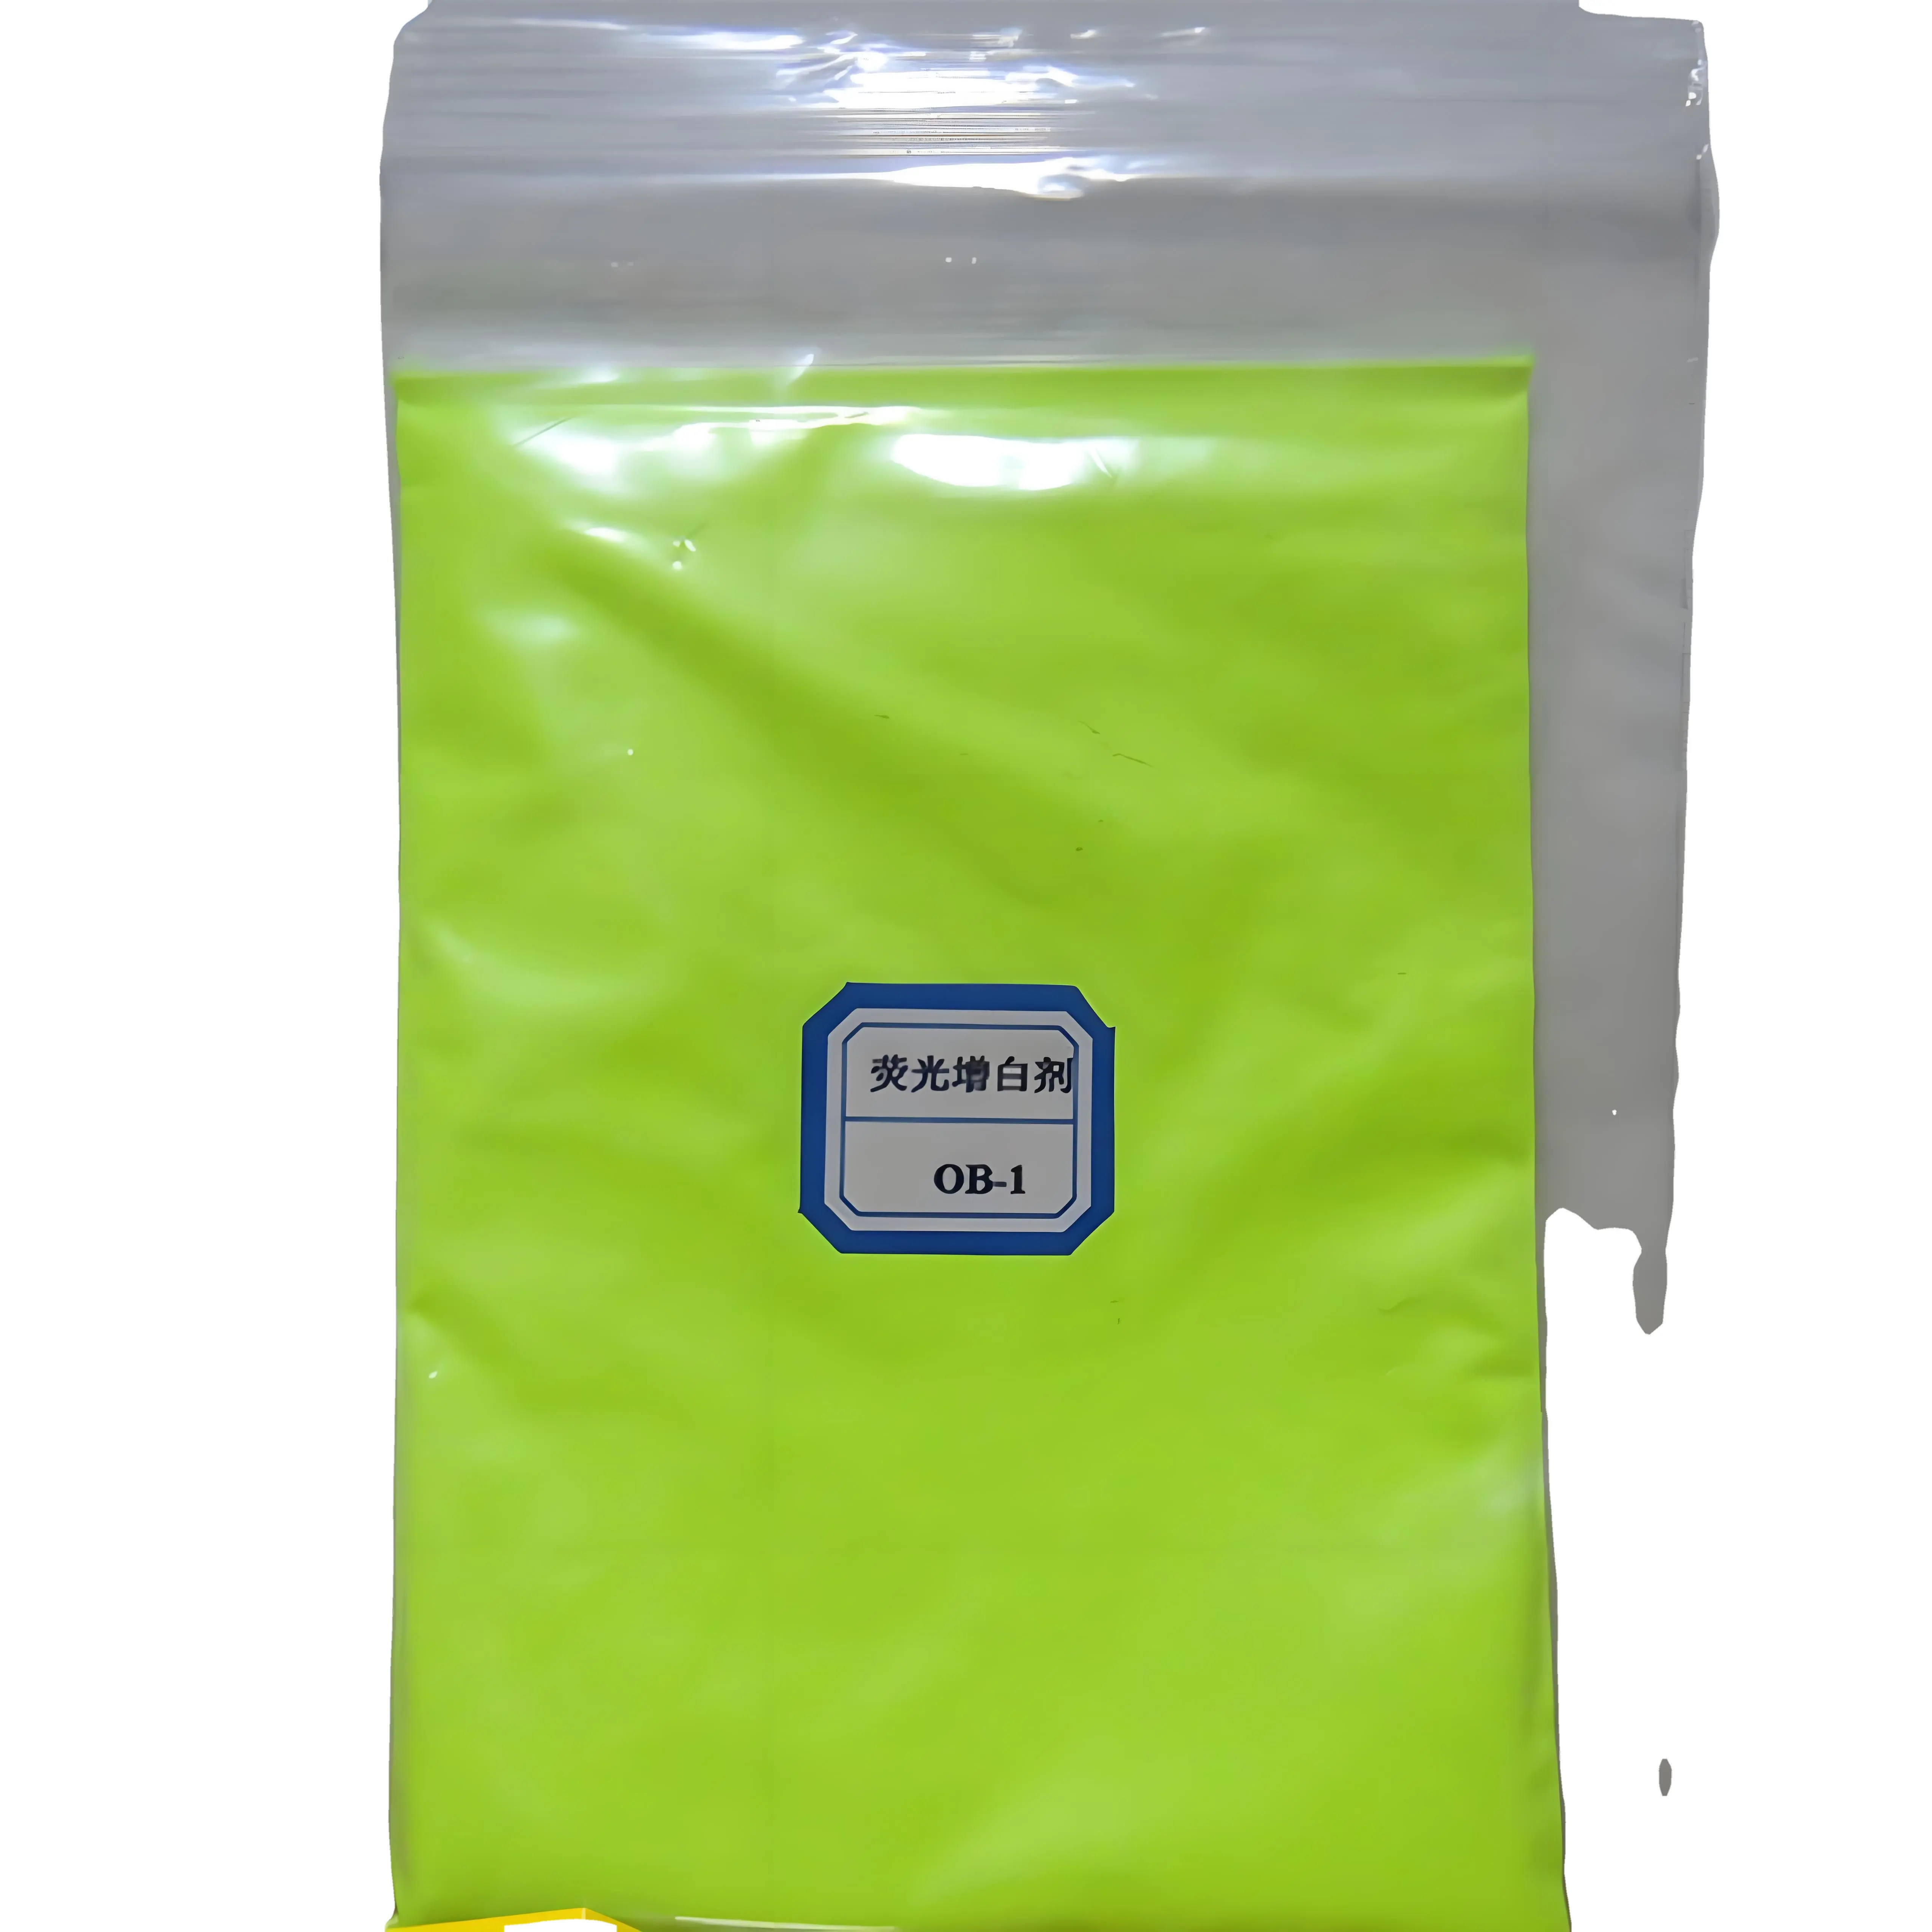 Agente sbiancante fluorescente in plastica, inchiostro, vernice e rivestimento di lavaggio OB-1 OB CBS-X FP127 1533-45-5